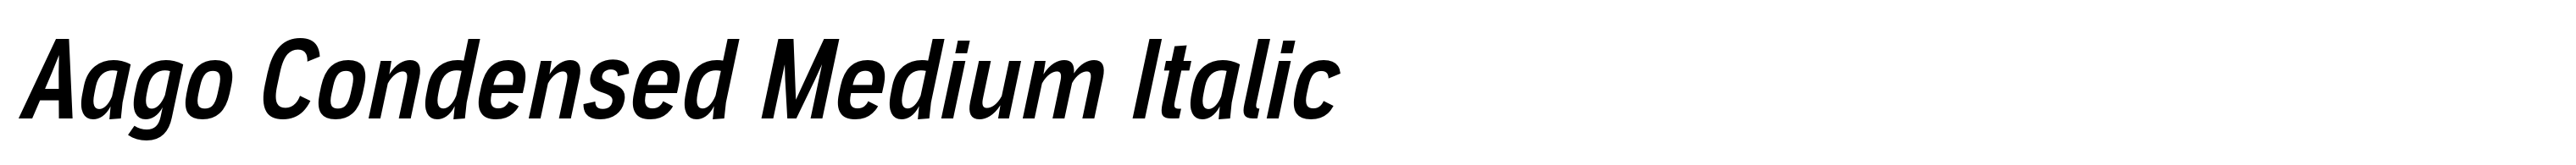 Aago Condensed Medium Italic